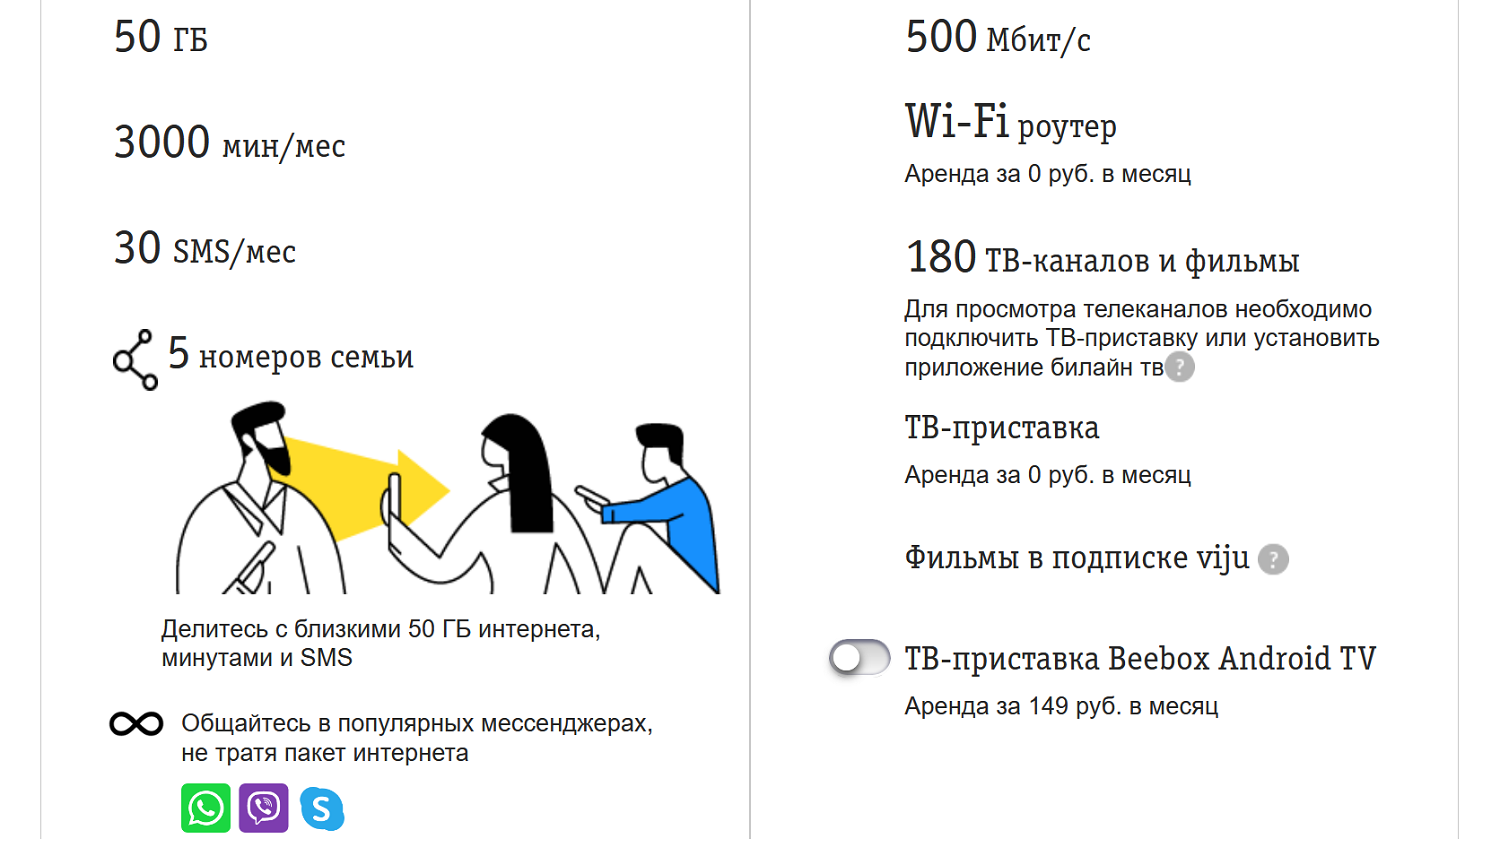 Тарифный план “На максимум” от билайна - обзор тарифа на ТопНомер.ру